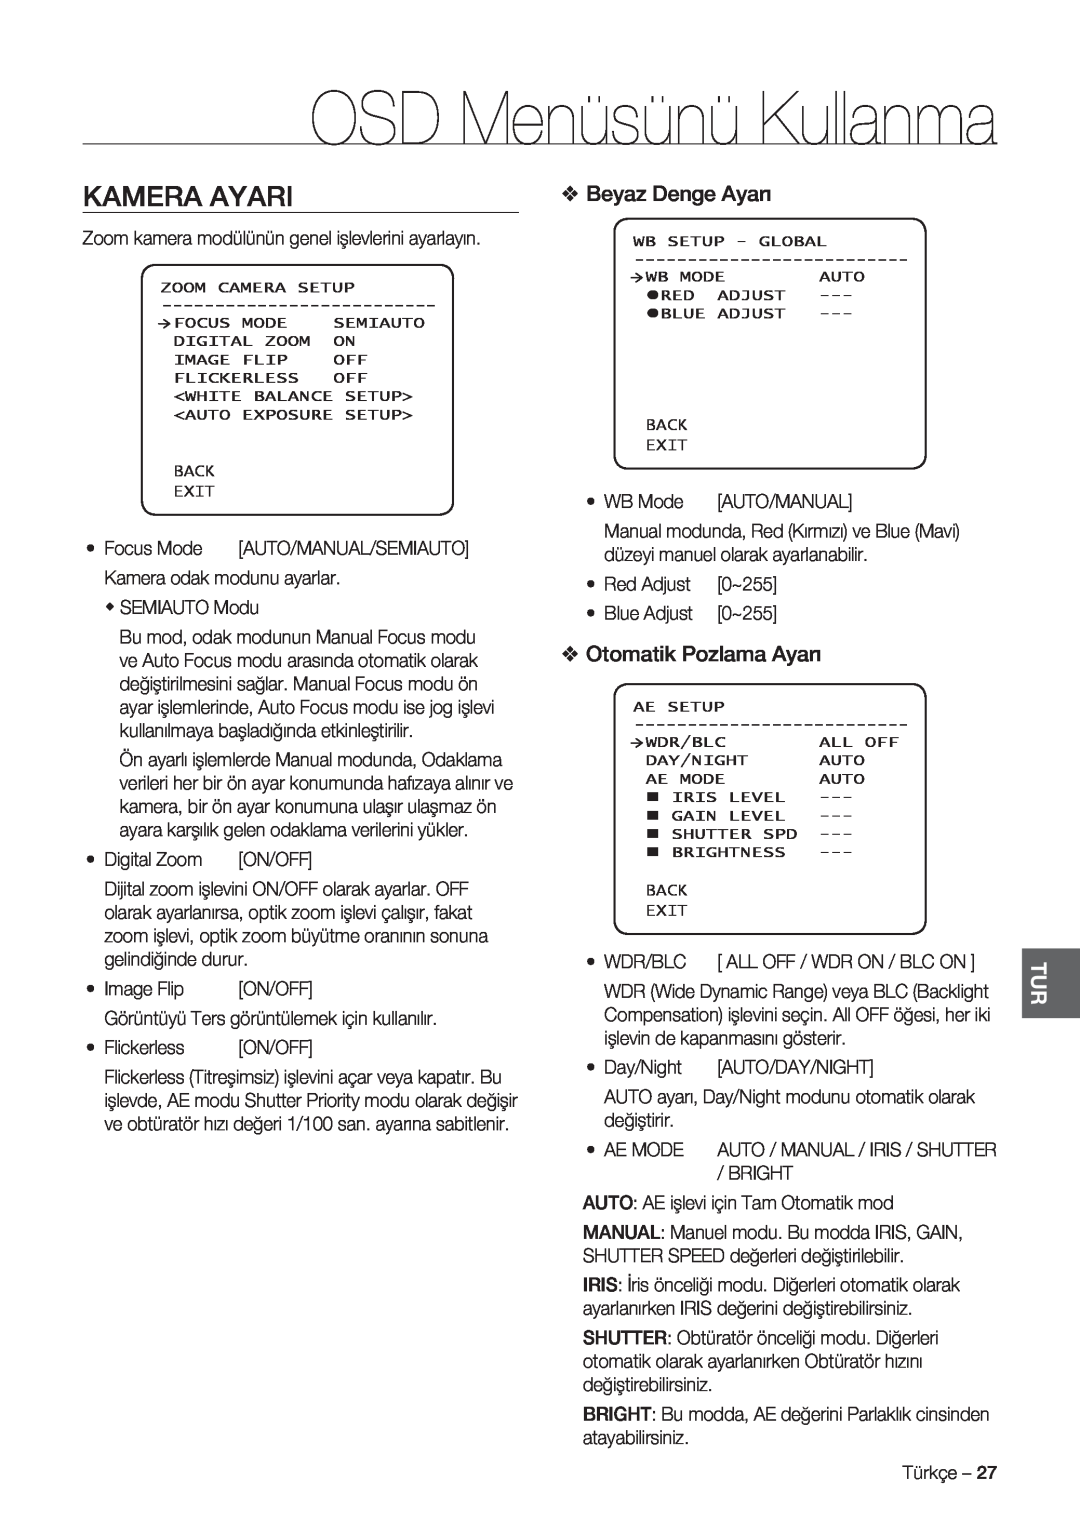 Samsung SCC-C7478P manual Kamera Ayari, Beyaz Denge Ayarı, Otomatik Pozlama Ayarı, OSD Menüsünü Kullanma 